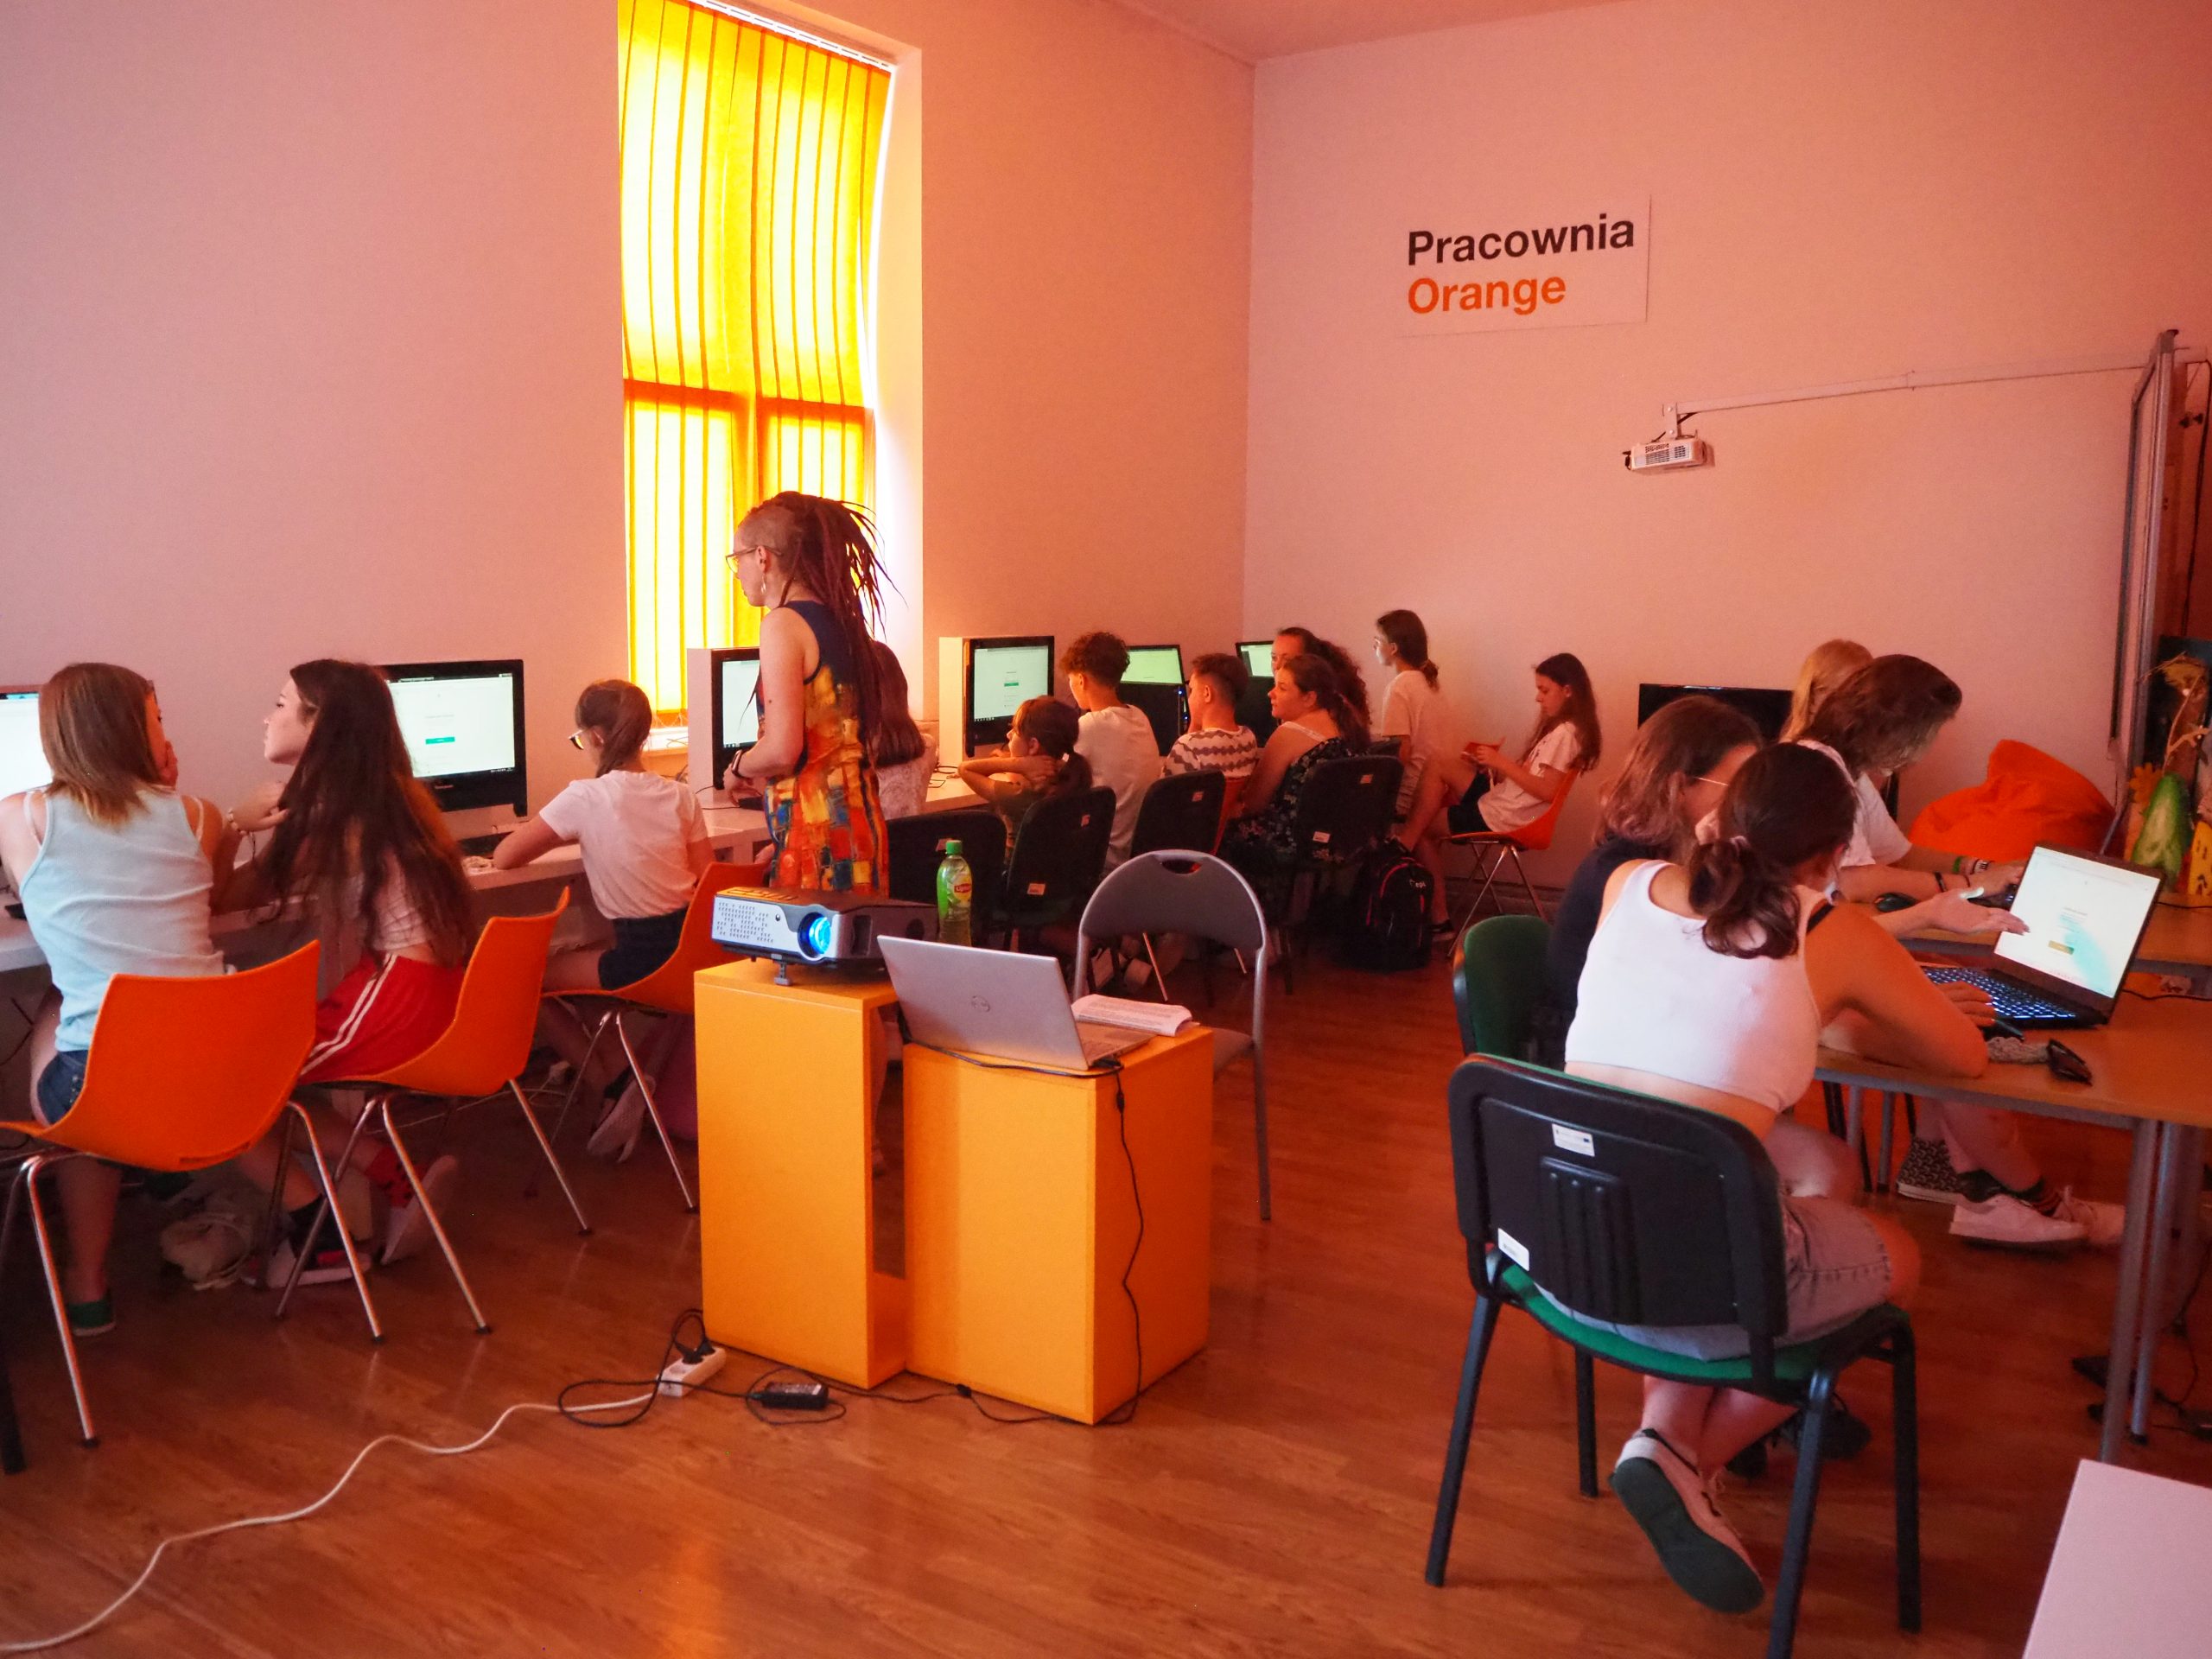 grupa osób siedzi przy komputerach w pracowni orange